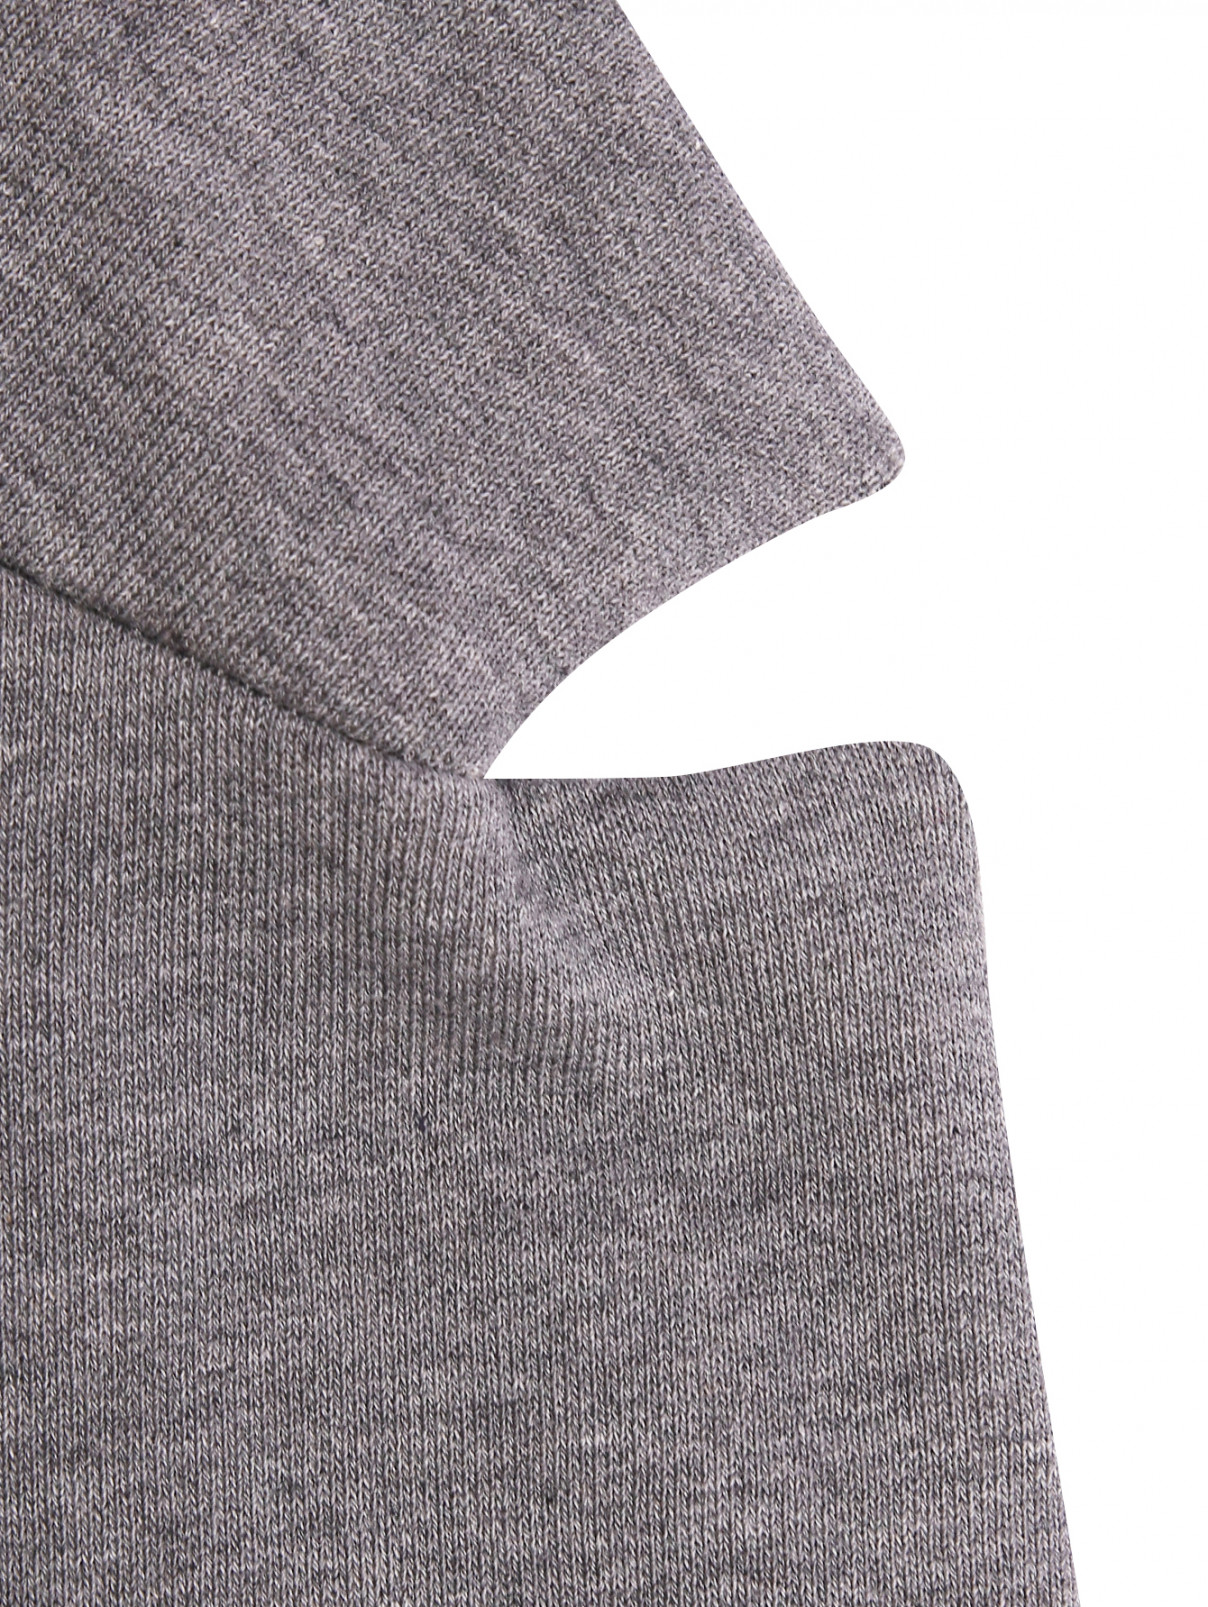 Трикотажный жакет из хлопка с карманами Persona by Marina Rinaldi  –  Деталь1  – Цвет:  Серый